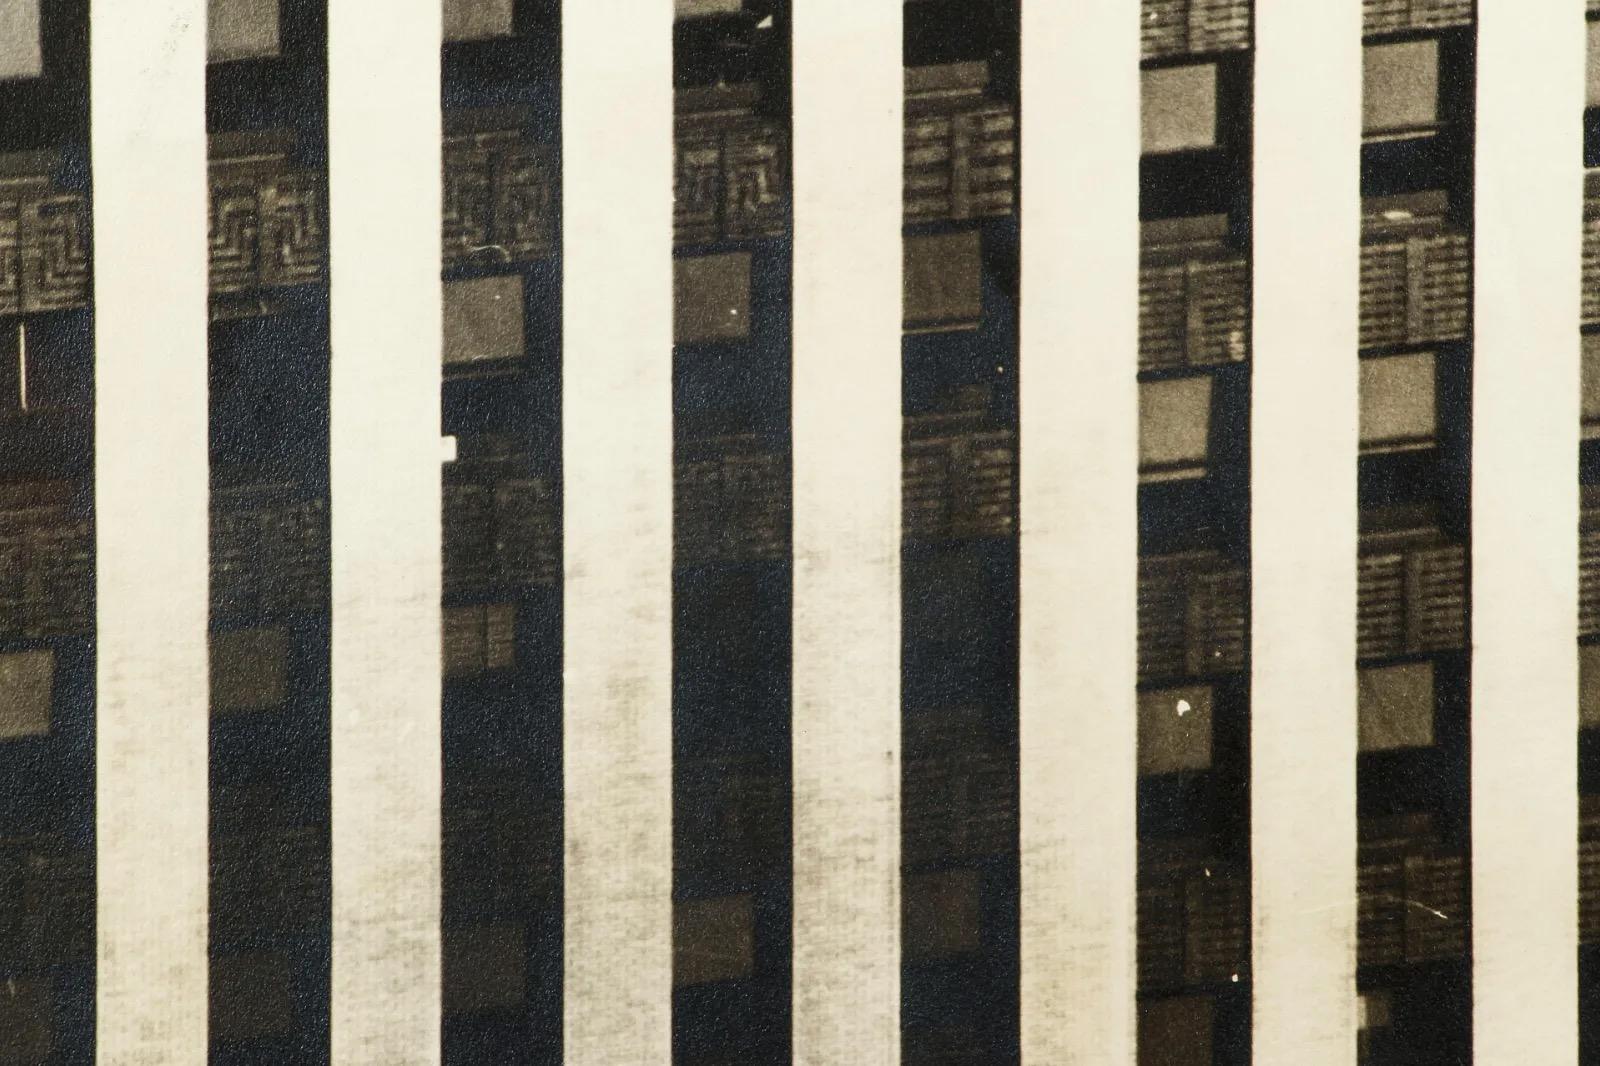 1950s Original Vintage Gelatinesilberdruck vom Chrysler Building in New York von der Fotografin Barbara Morgan. Barbara Morgan ist weithin bekannt für ihre bahnbrechenden fotografischen Aufnahmen der amerikanischen Modern Dance-Bewegung aus den